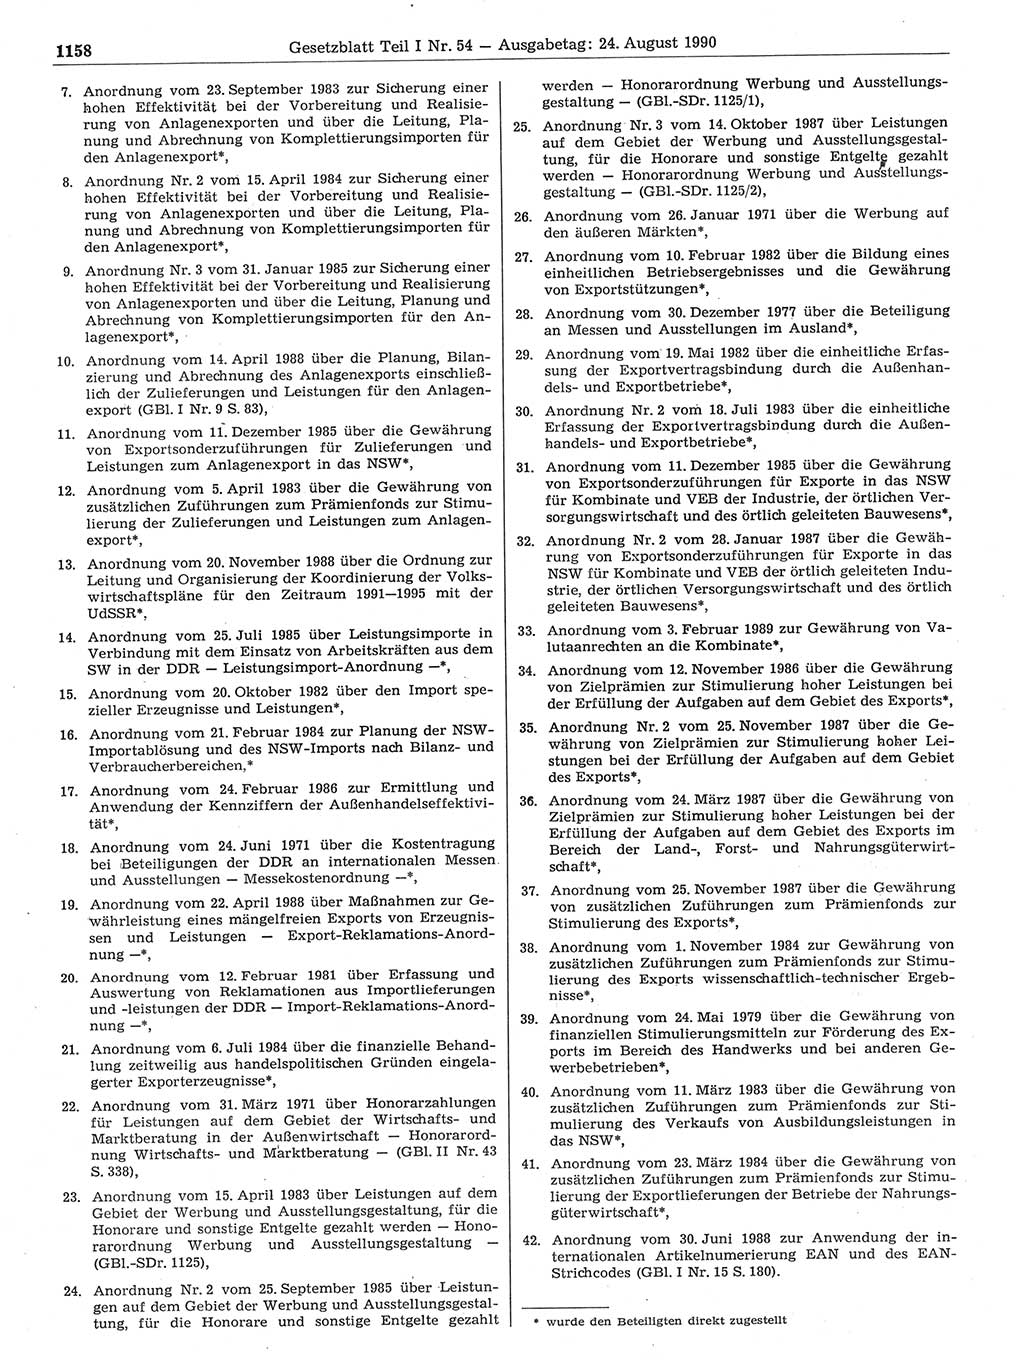 Gesetzblatt (GBl.) der Deutschen Demokratischen Republik (DDR) Teil Ⅰ 1990, Seite 1158 (GBl. DDR Ⅰ 1990, S. 1158)